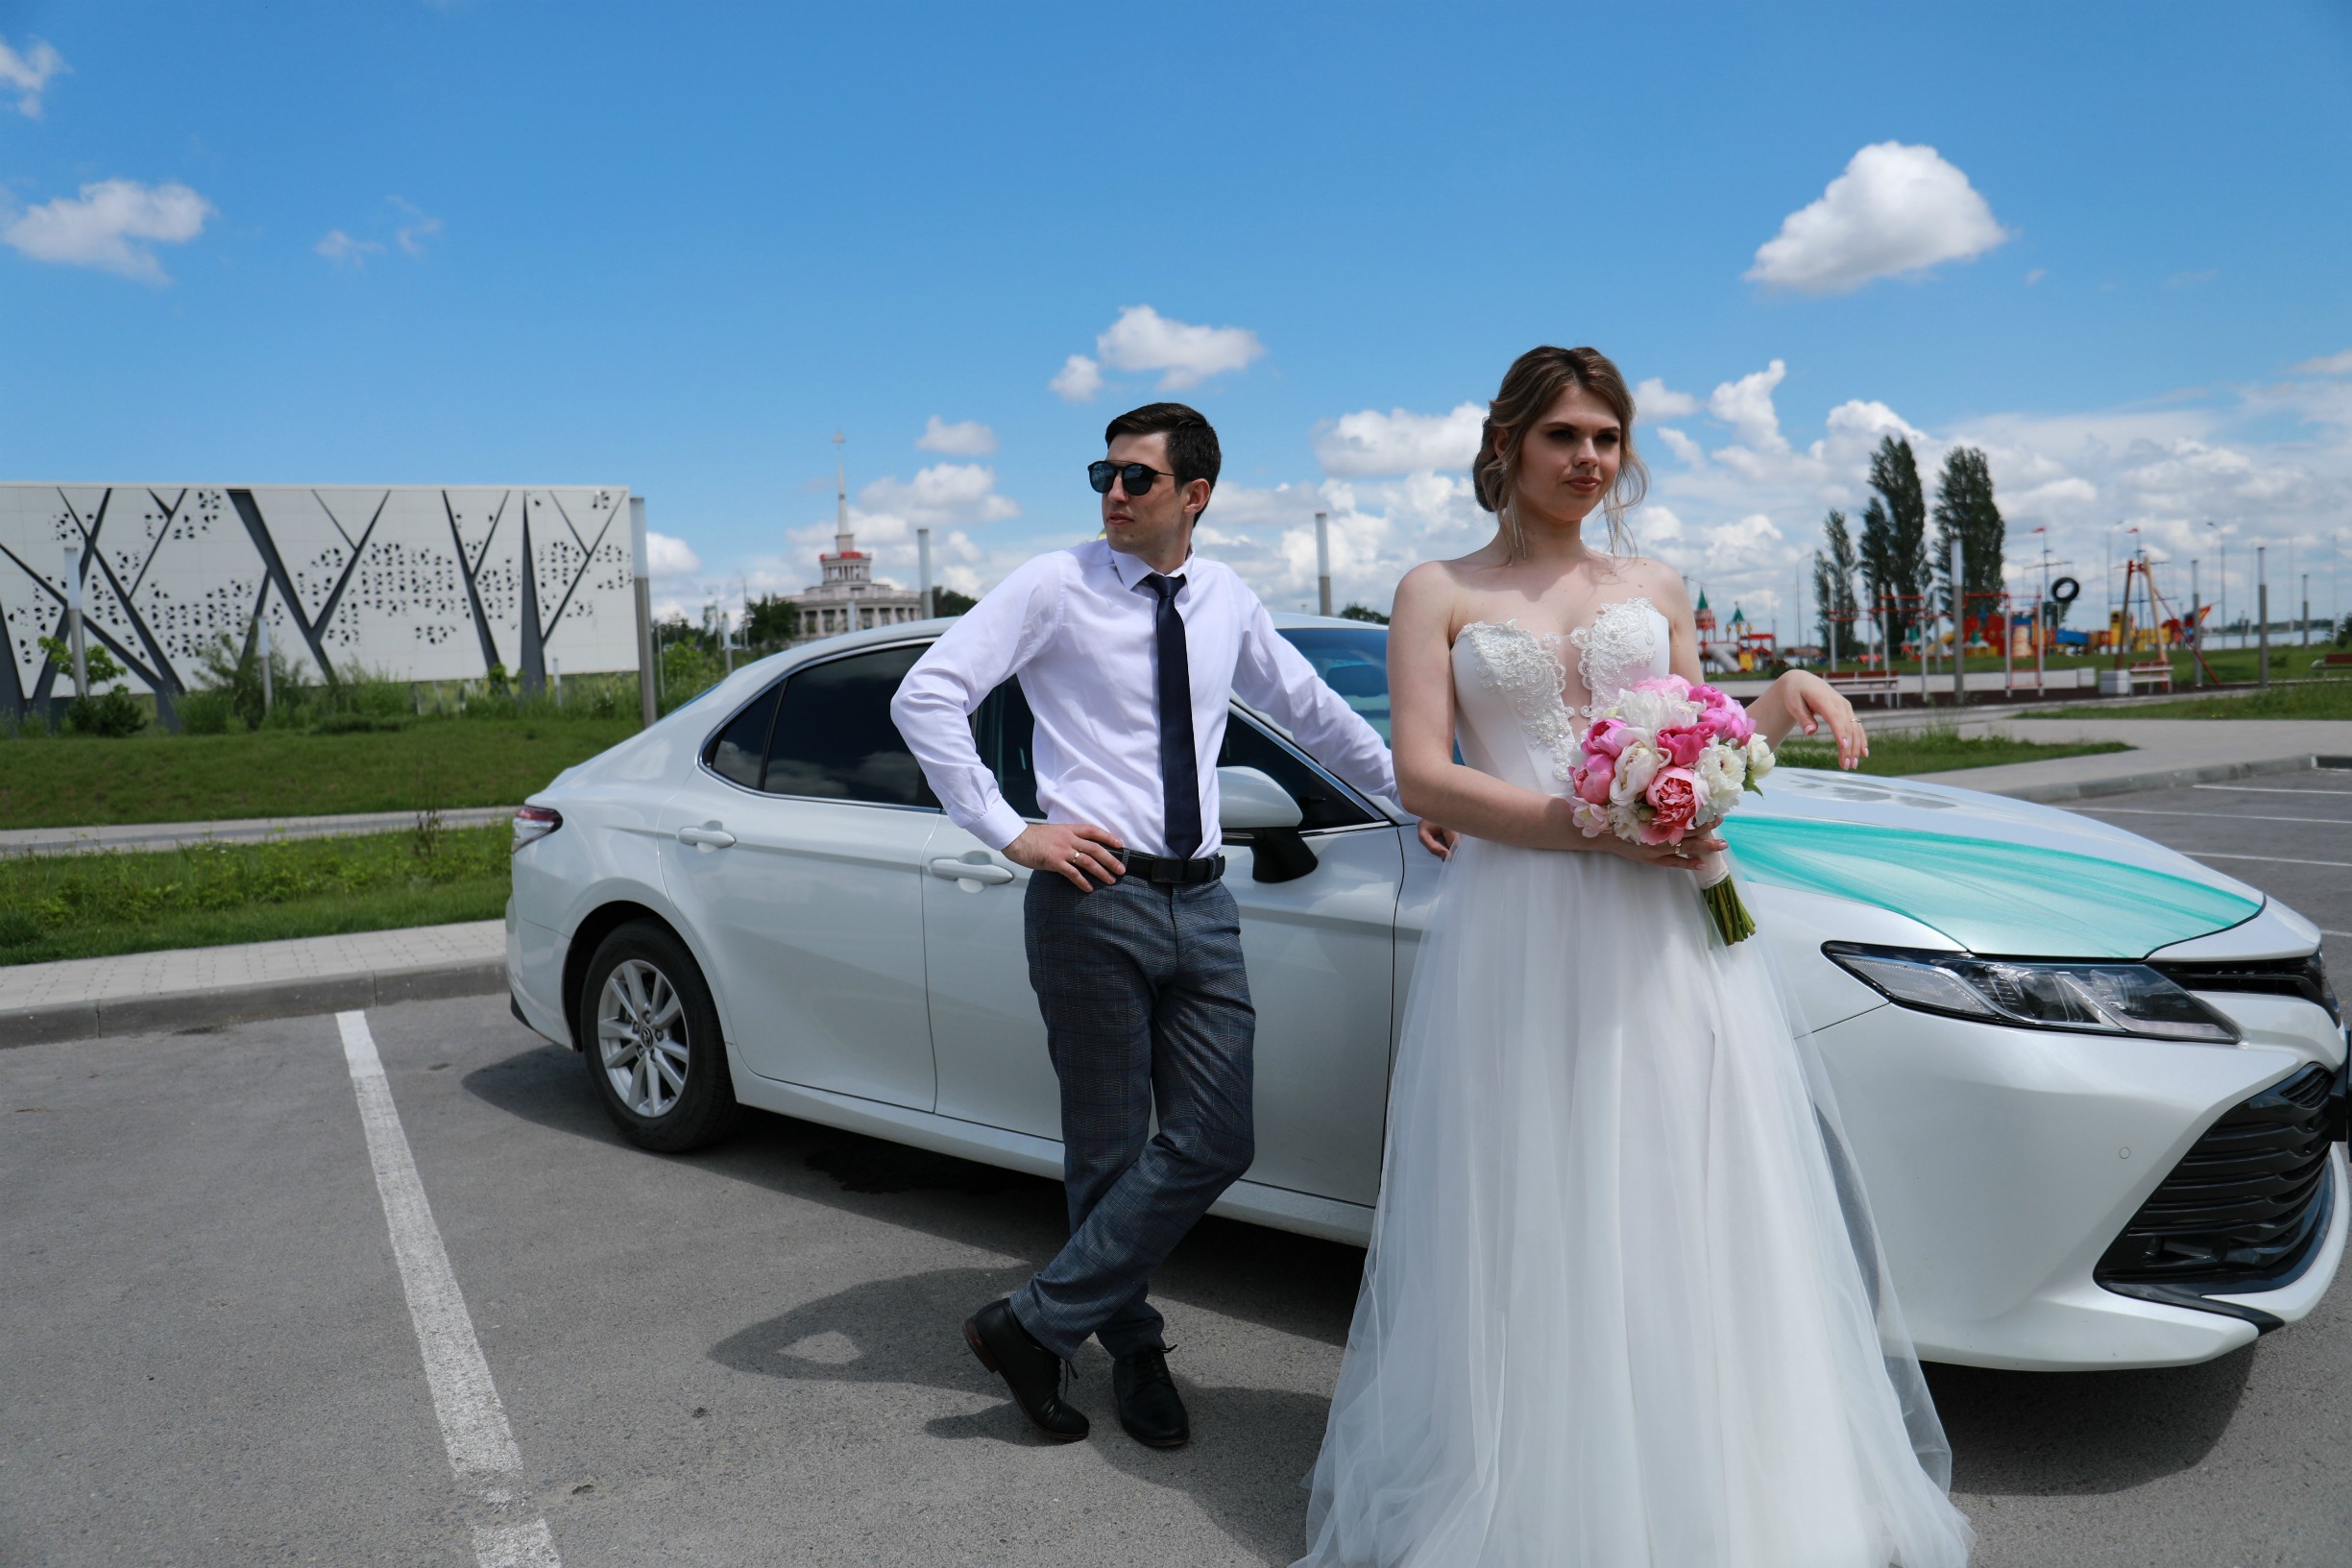 Лето 2020 продолжается! Прекрасная пара, прекрасное авто сопровождение на свадьбу от компании СВАДЕБНЫЙ КОРТЕЖ ВОЛГОГРАД. Заказ машин и украшений на свадьбу по доступным ценам. Любой район Волгограда